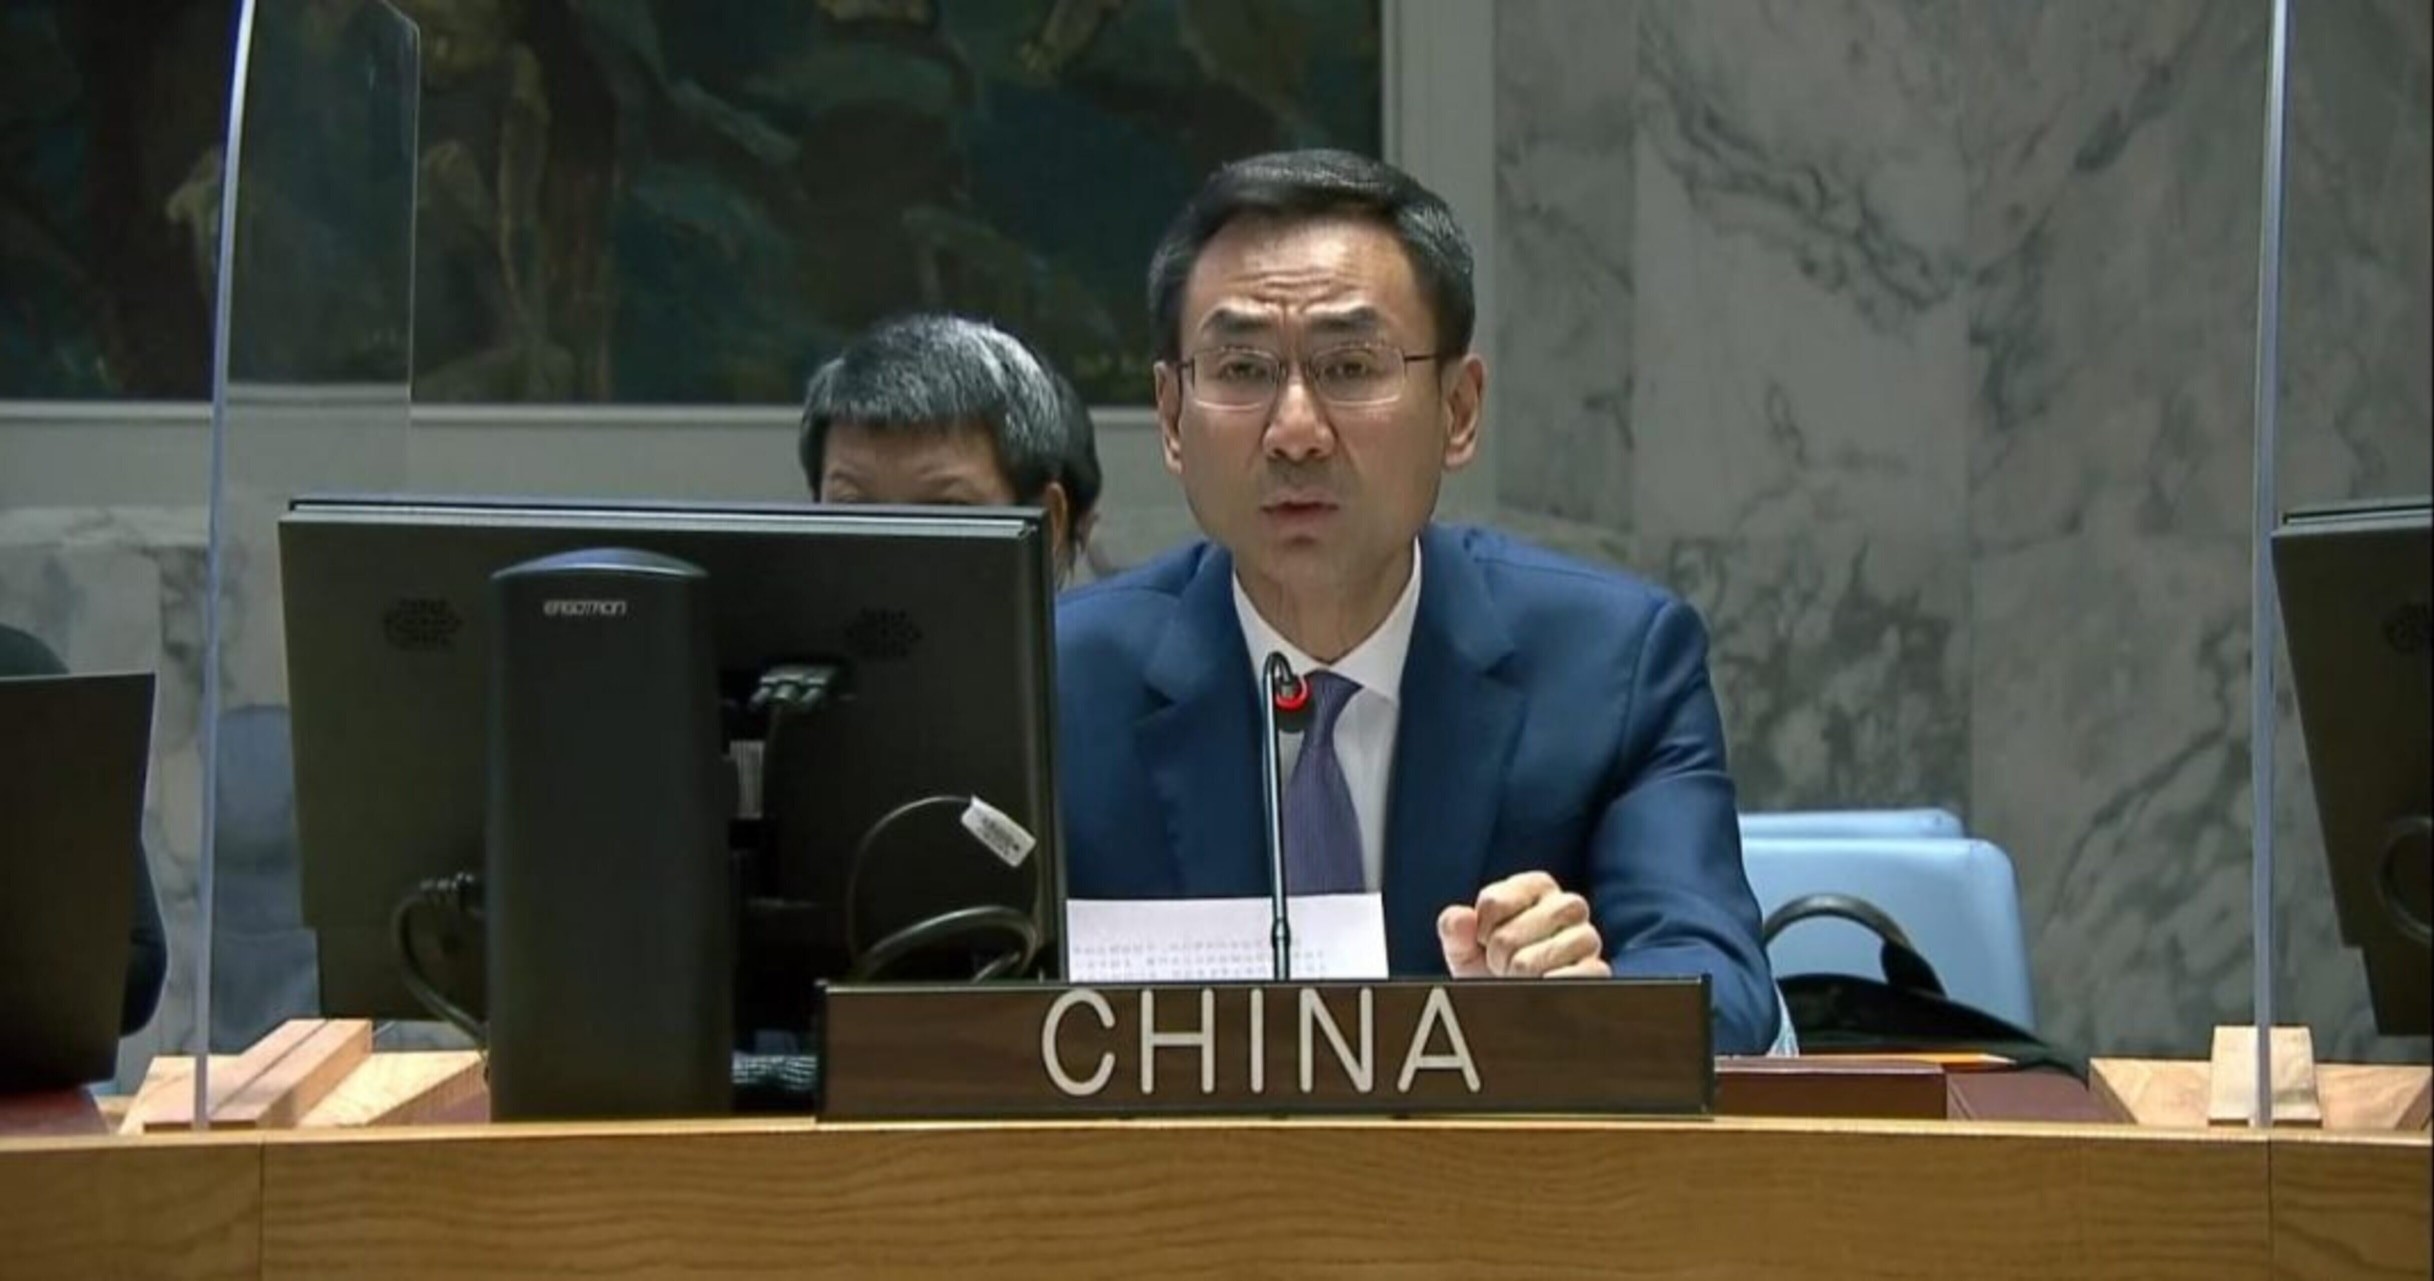 Phó đại diện thường trực của Trung Quốc tại Liên hợp quốc, Cảnh Sảng, phát biểu trong cuộc họp của Hội đồng Bảo an tại trụ sở ở New York. (Ảnh: AP)